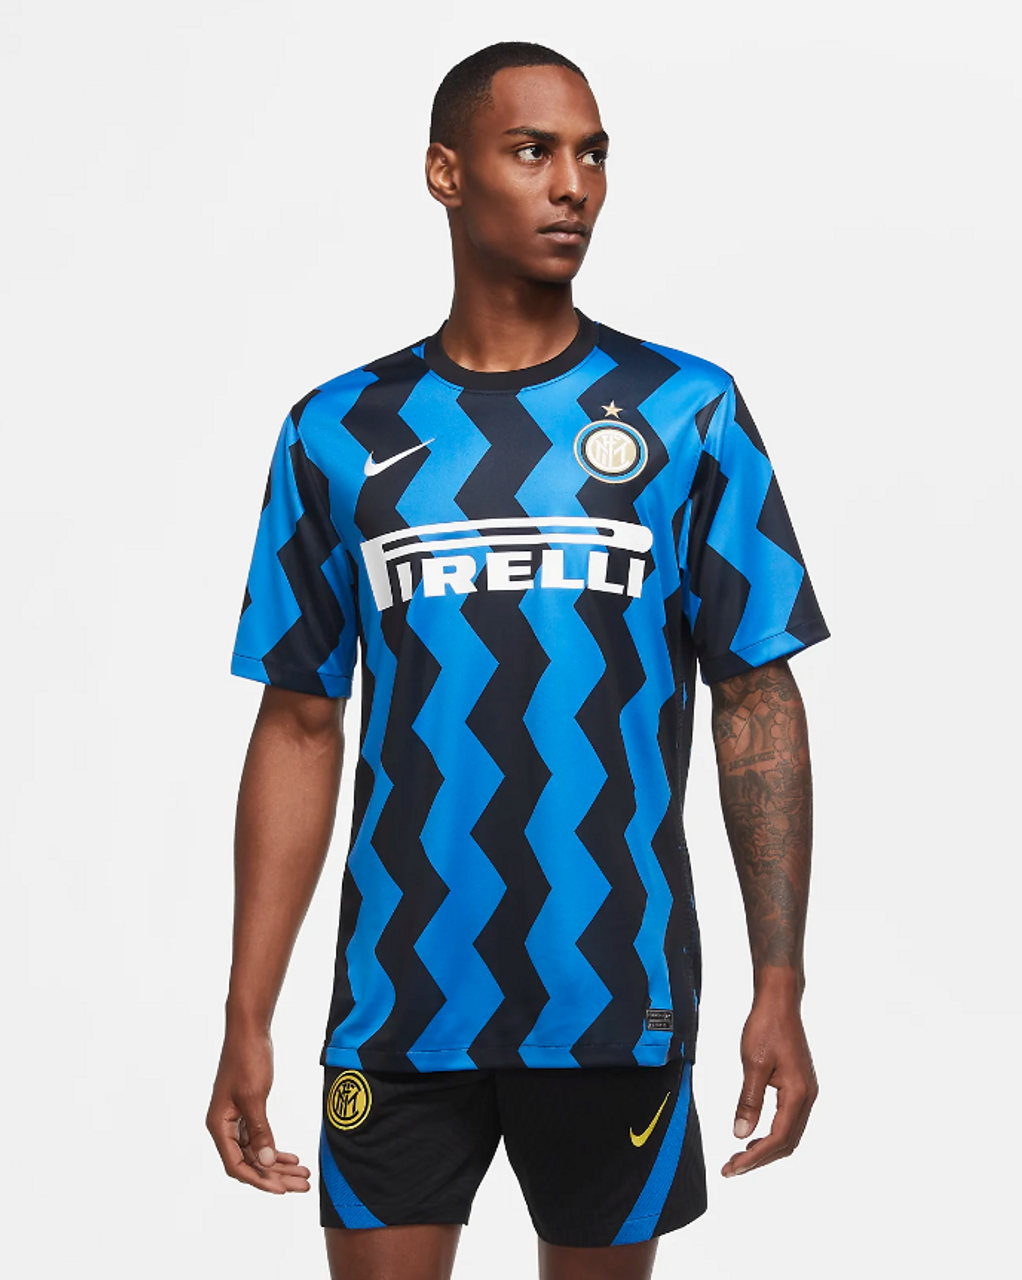 Quejar sentar Melodrama Nike Inter Milan Home Jersey 414/Blue Spark-Black 2020/21 - Chicago Soccer